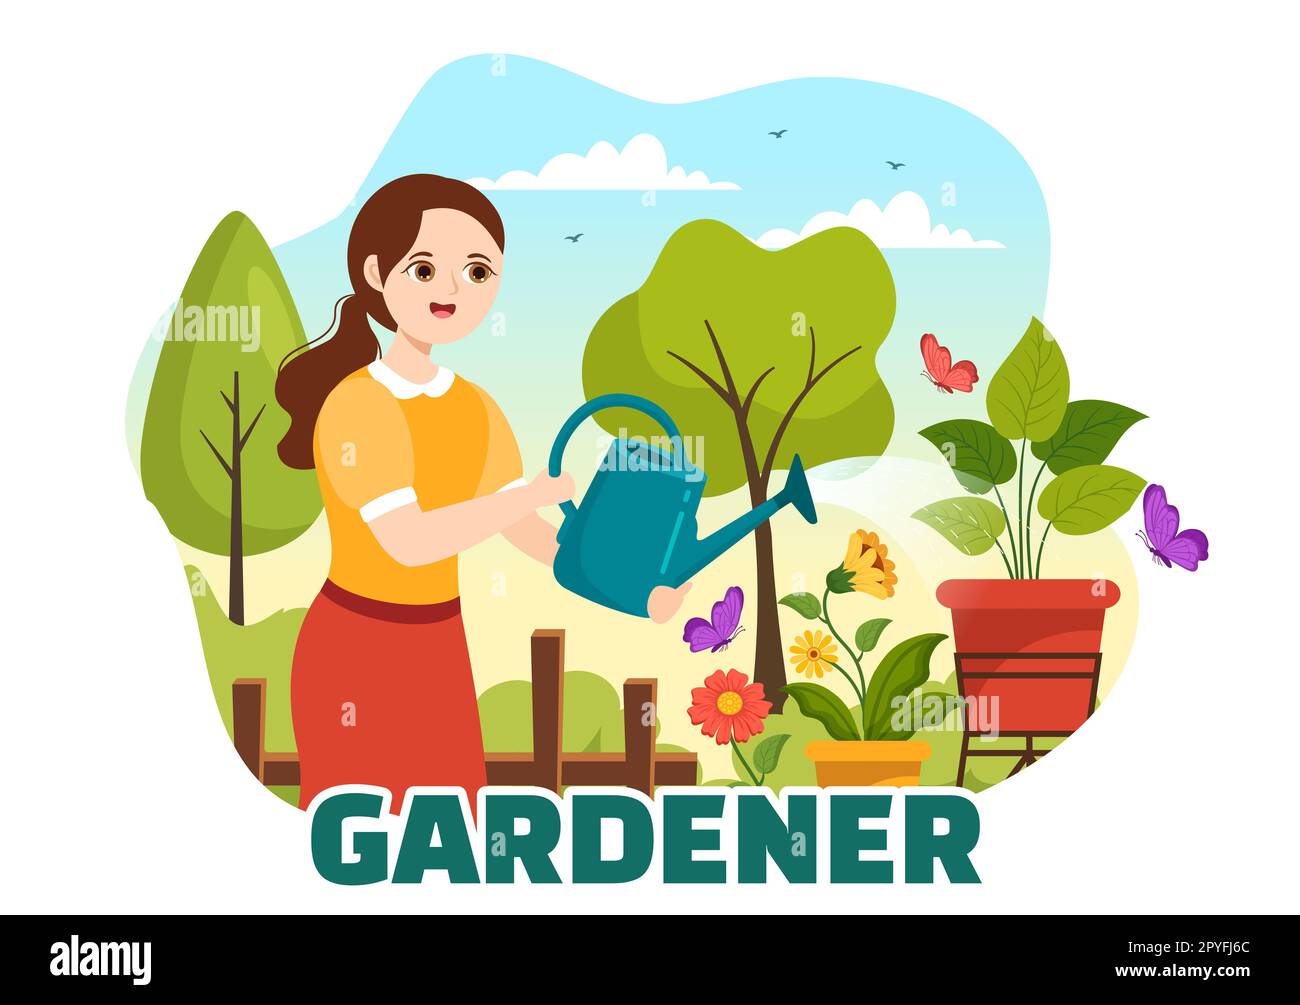 Illustration de jardinier avec les outils de jardin, l'agriculture, pousse des légumes en botanique d'été Gardening plat dessin main pour les modèles de page d'arrivée Banque D'Images